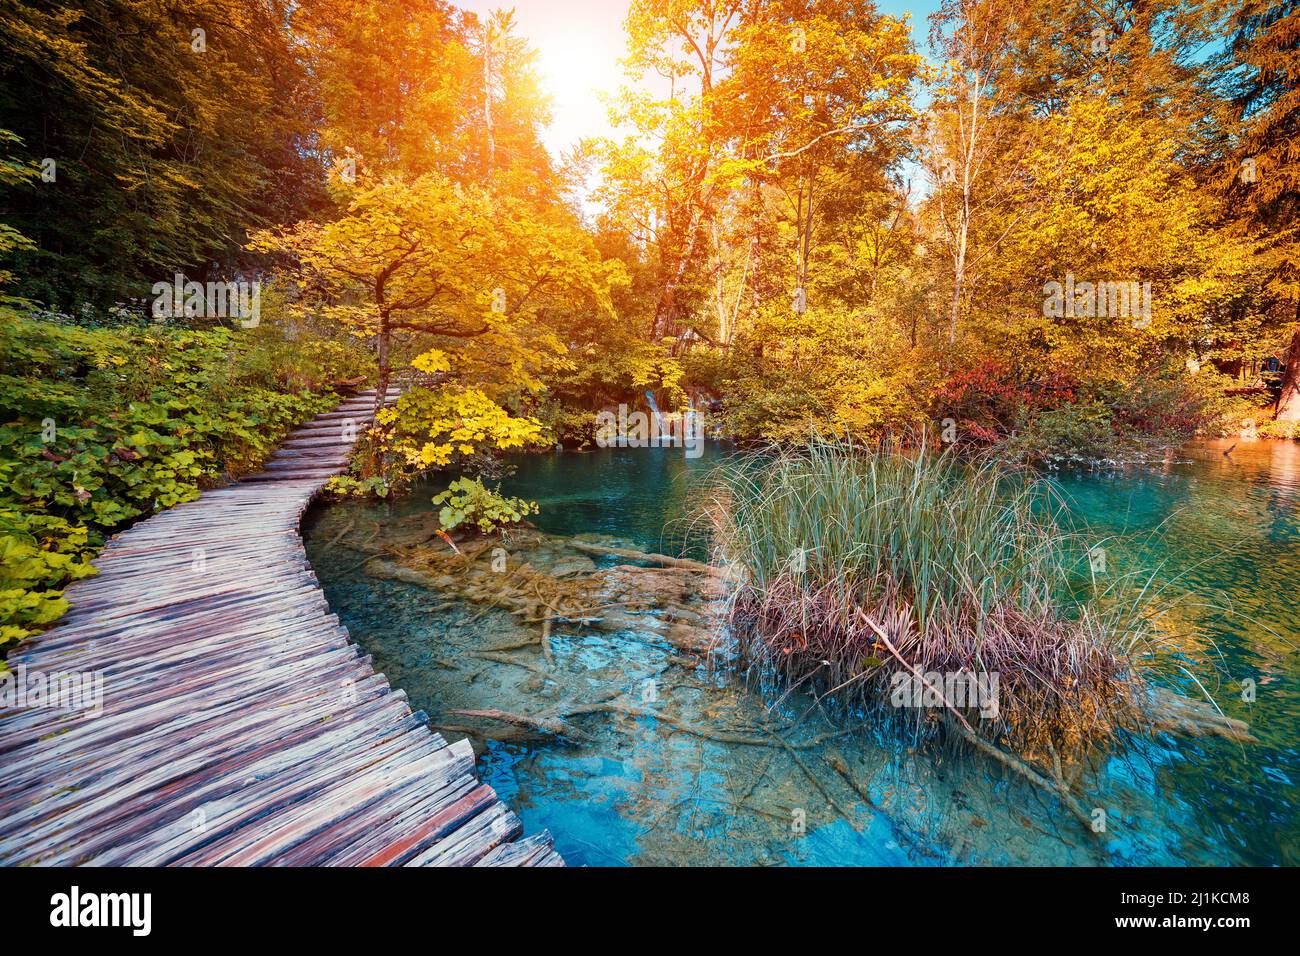 Majestätischer Blick auf den See mit türkisfarbenem Wasser und sonnigen Balken im Nationalpark Plitvicer Seen. Der Wald leuchtet durch Sonnenlicht. Kroatien. Europa. Dramatischer Morgen Stockfoto